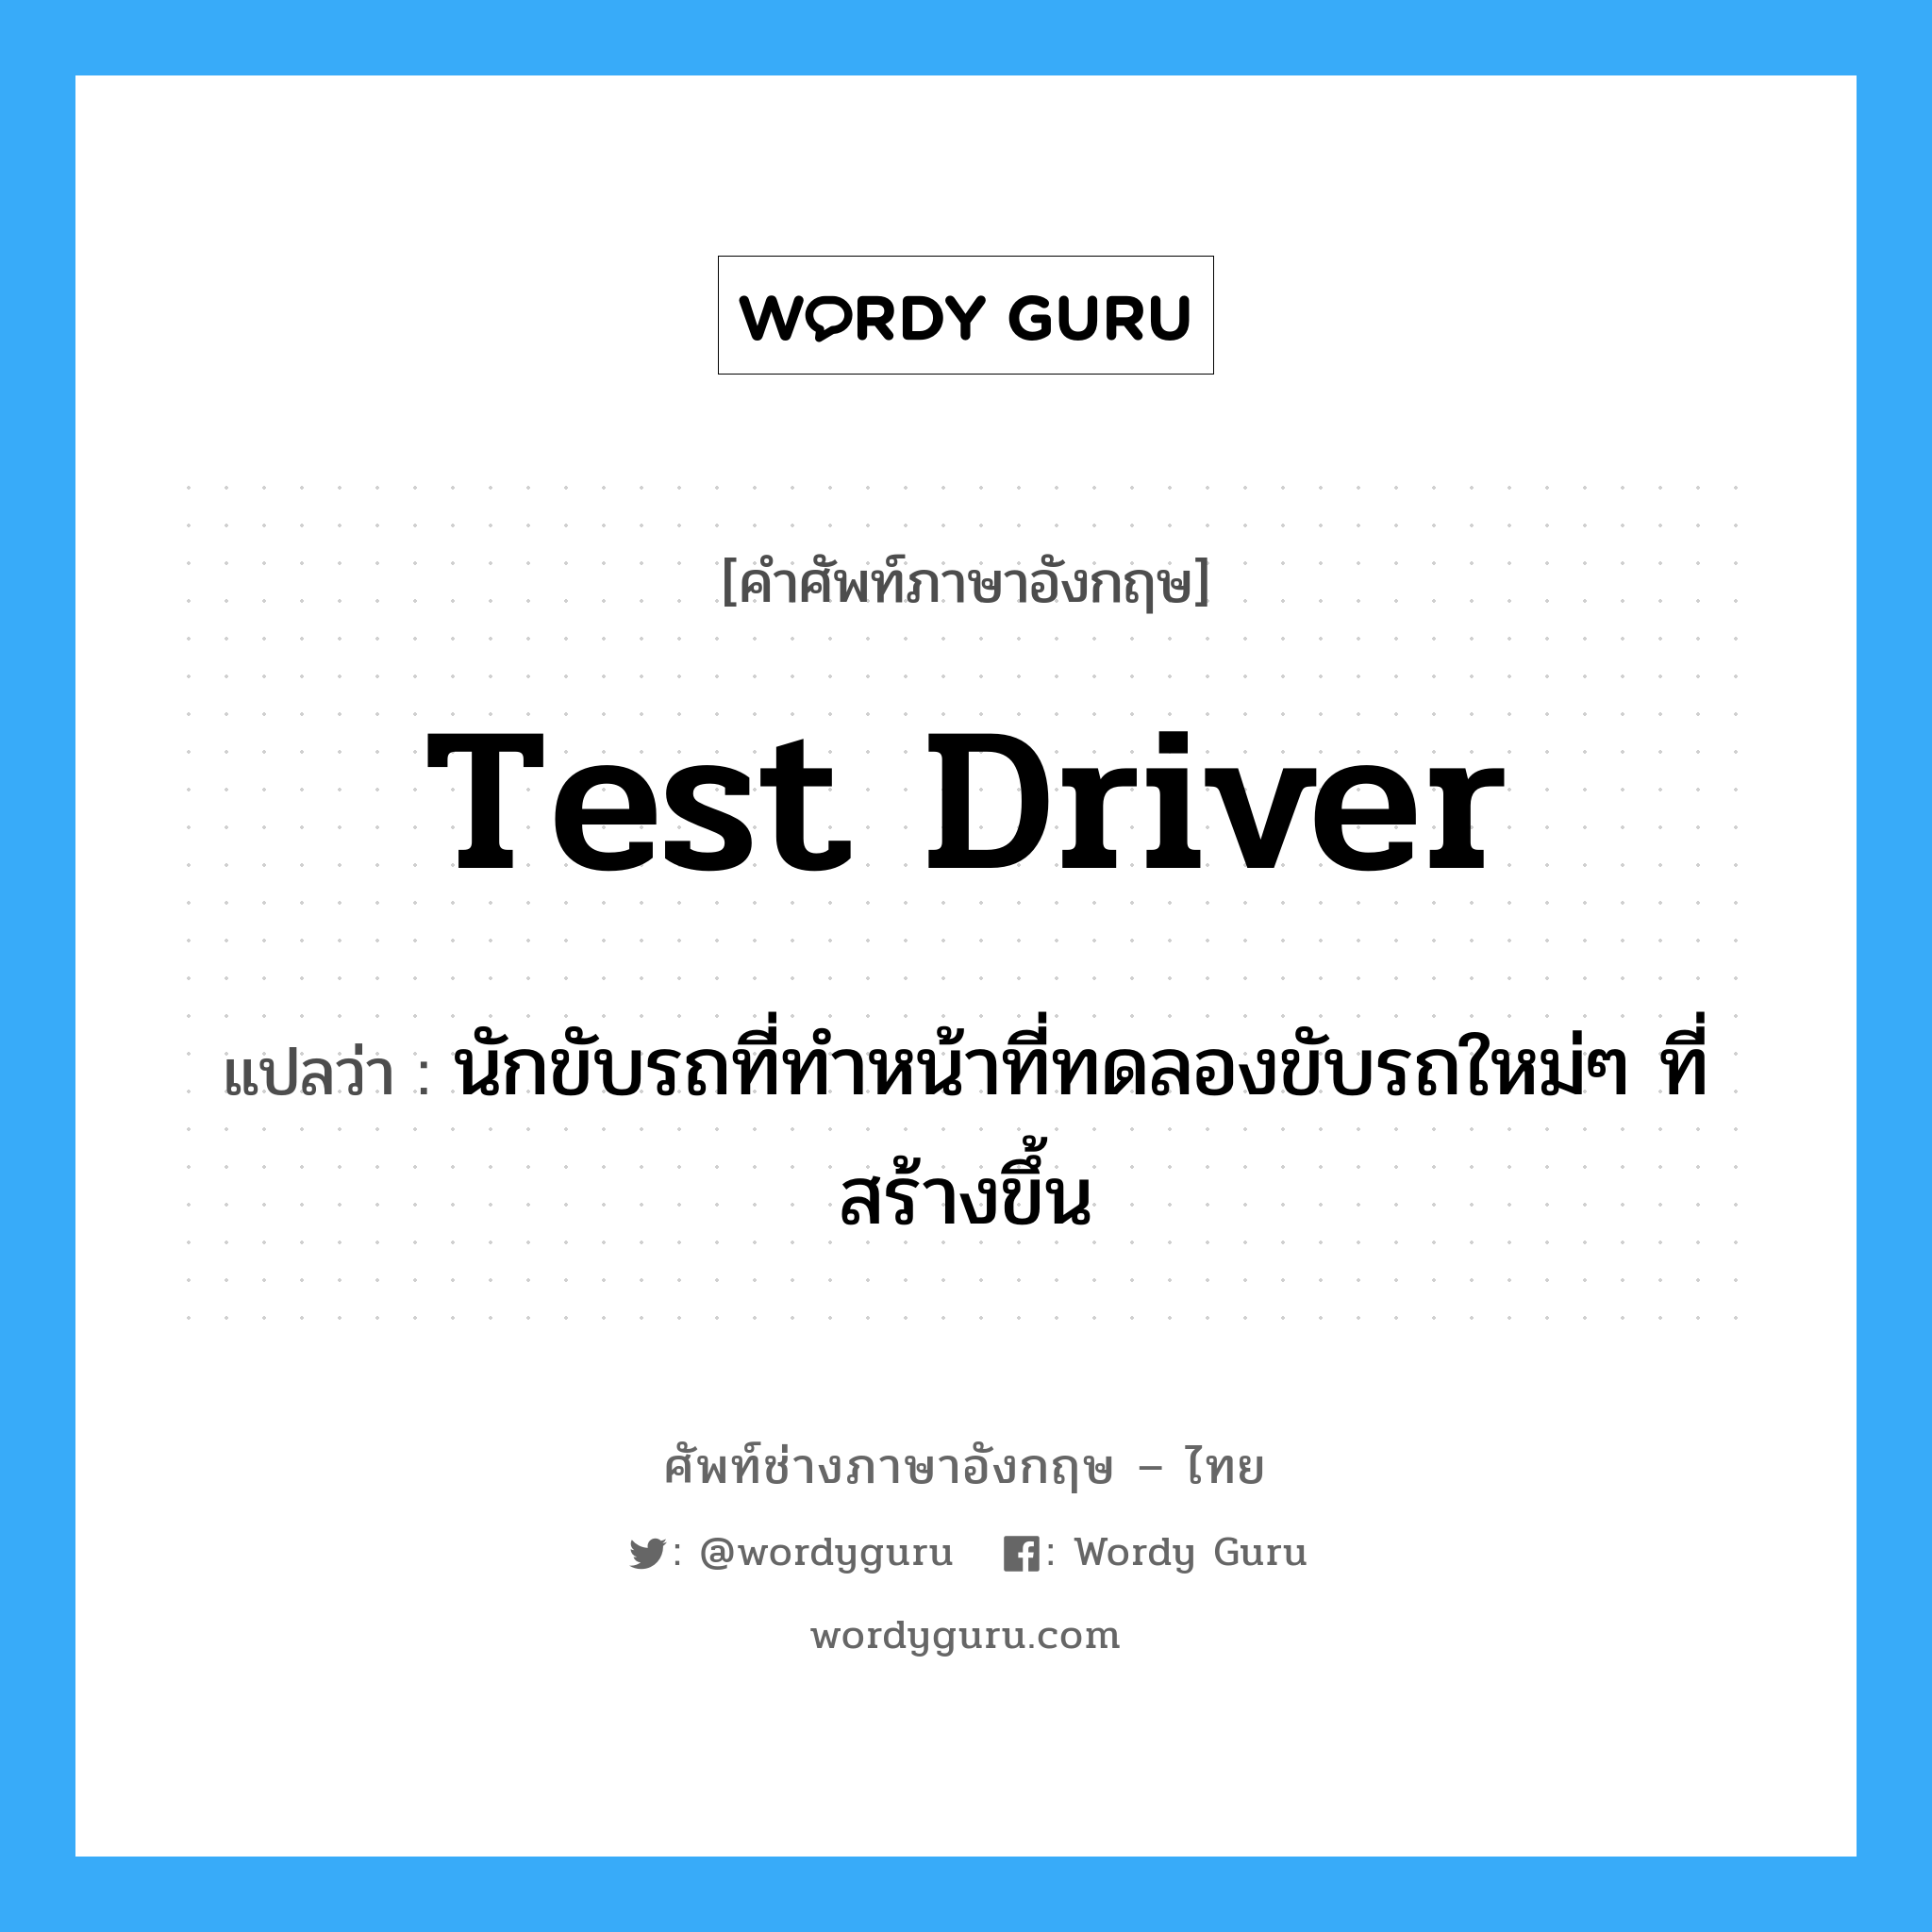 test driver แปลว่า?, คำศัพท์ช่างภาษาอังกฤษ - ไทย test driver คำศัพท์ภาษาอังกฤษ test driver แปลว่า นักขับรถที่ทำหน้าที่ทดลองขับรถใหม่ๆ ที่สร้างขึ้น